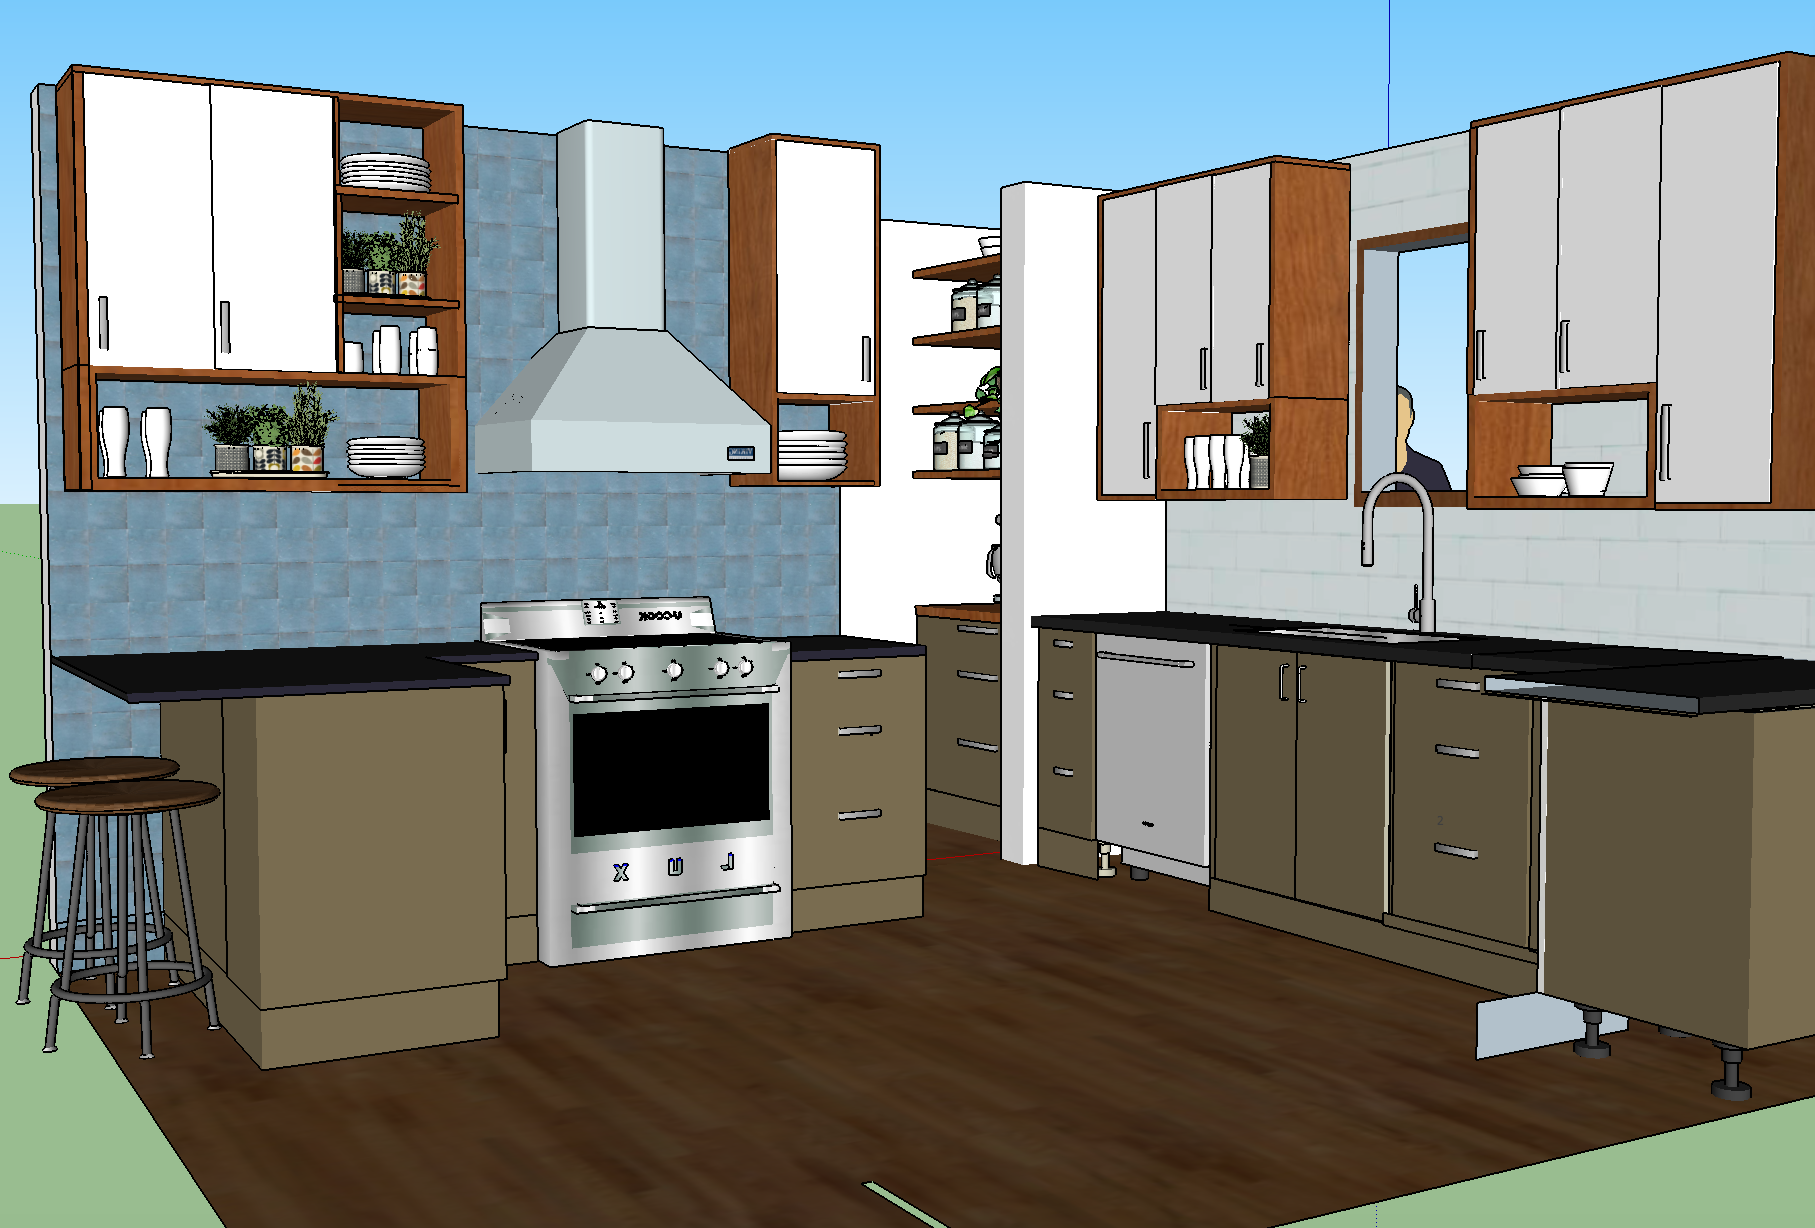 olliePop Design // Kitchen remodel design